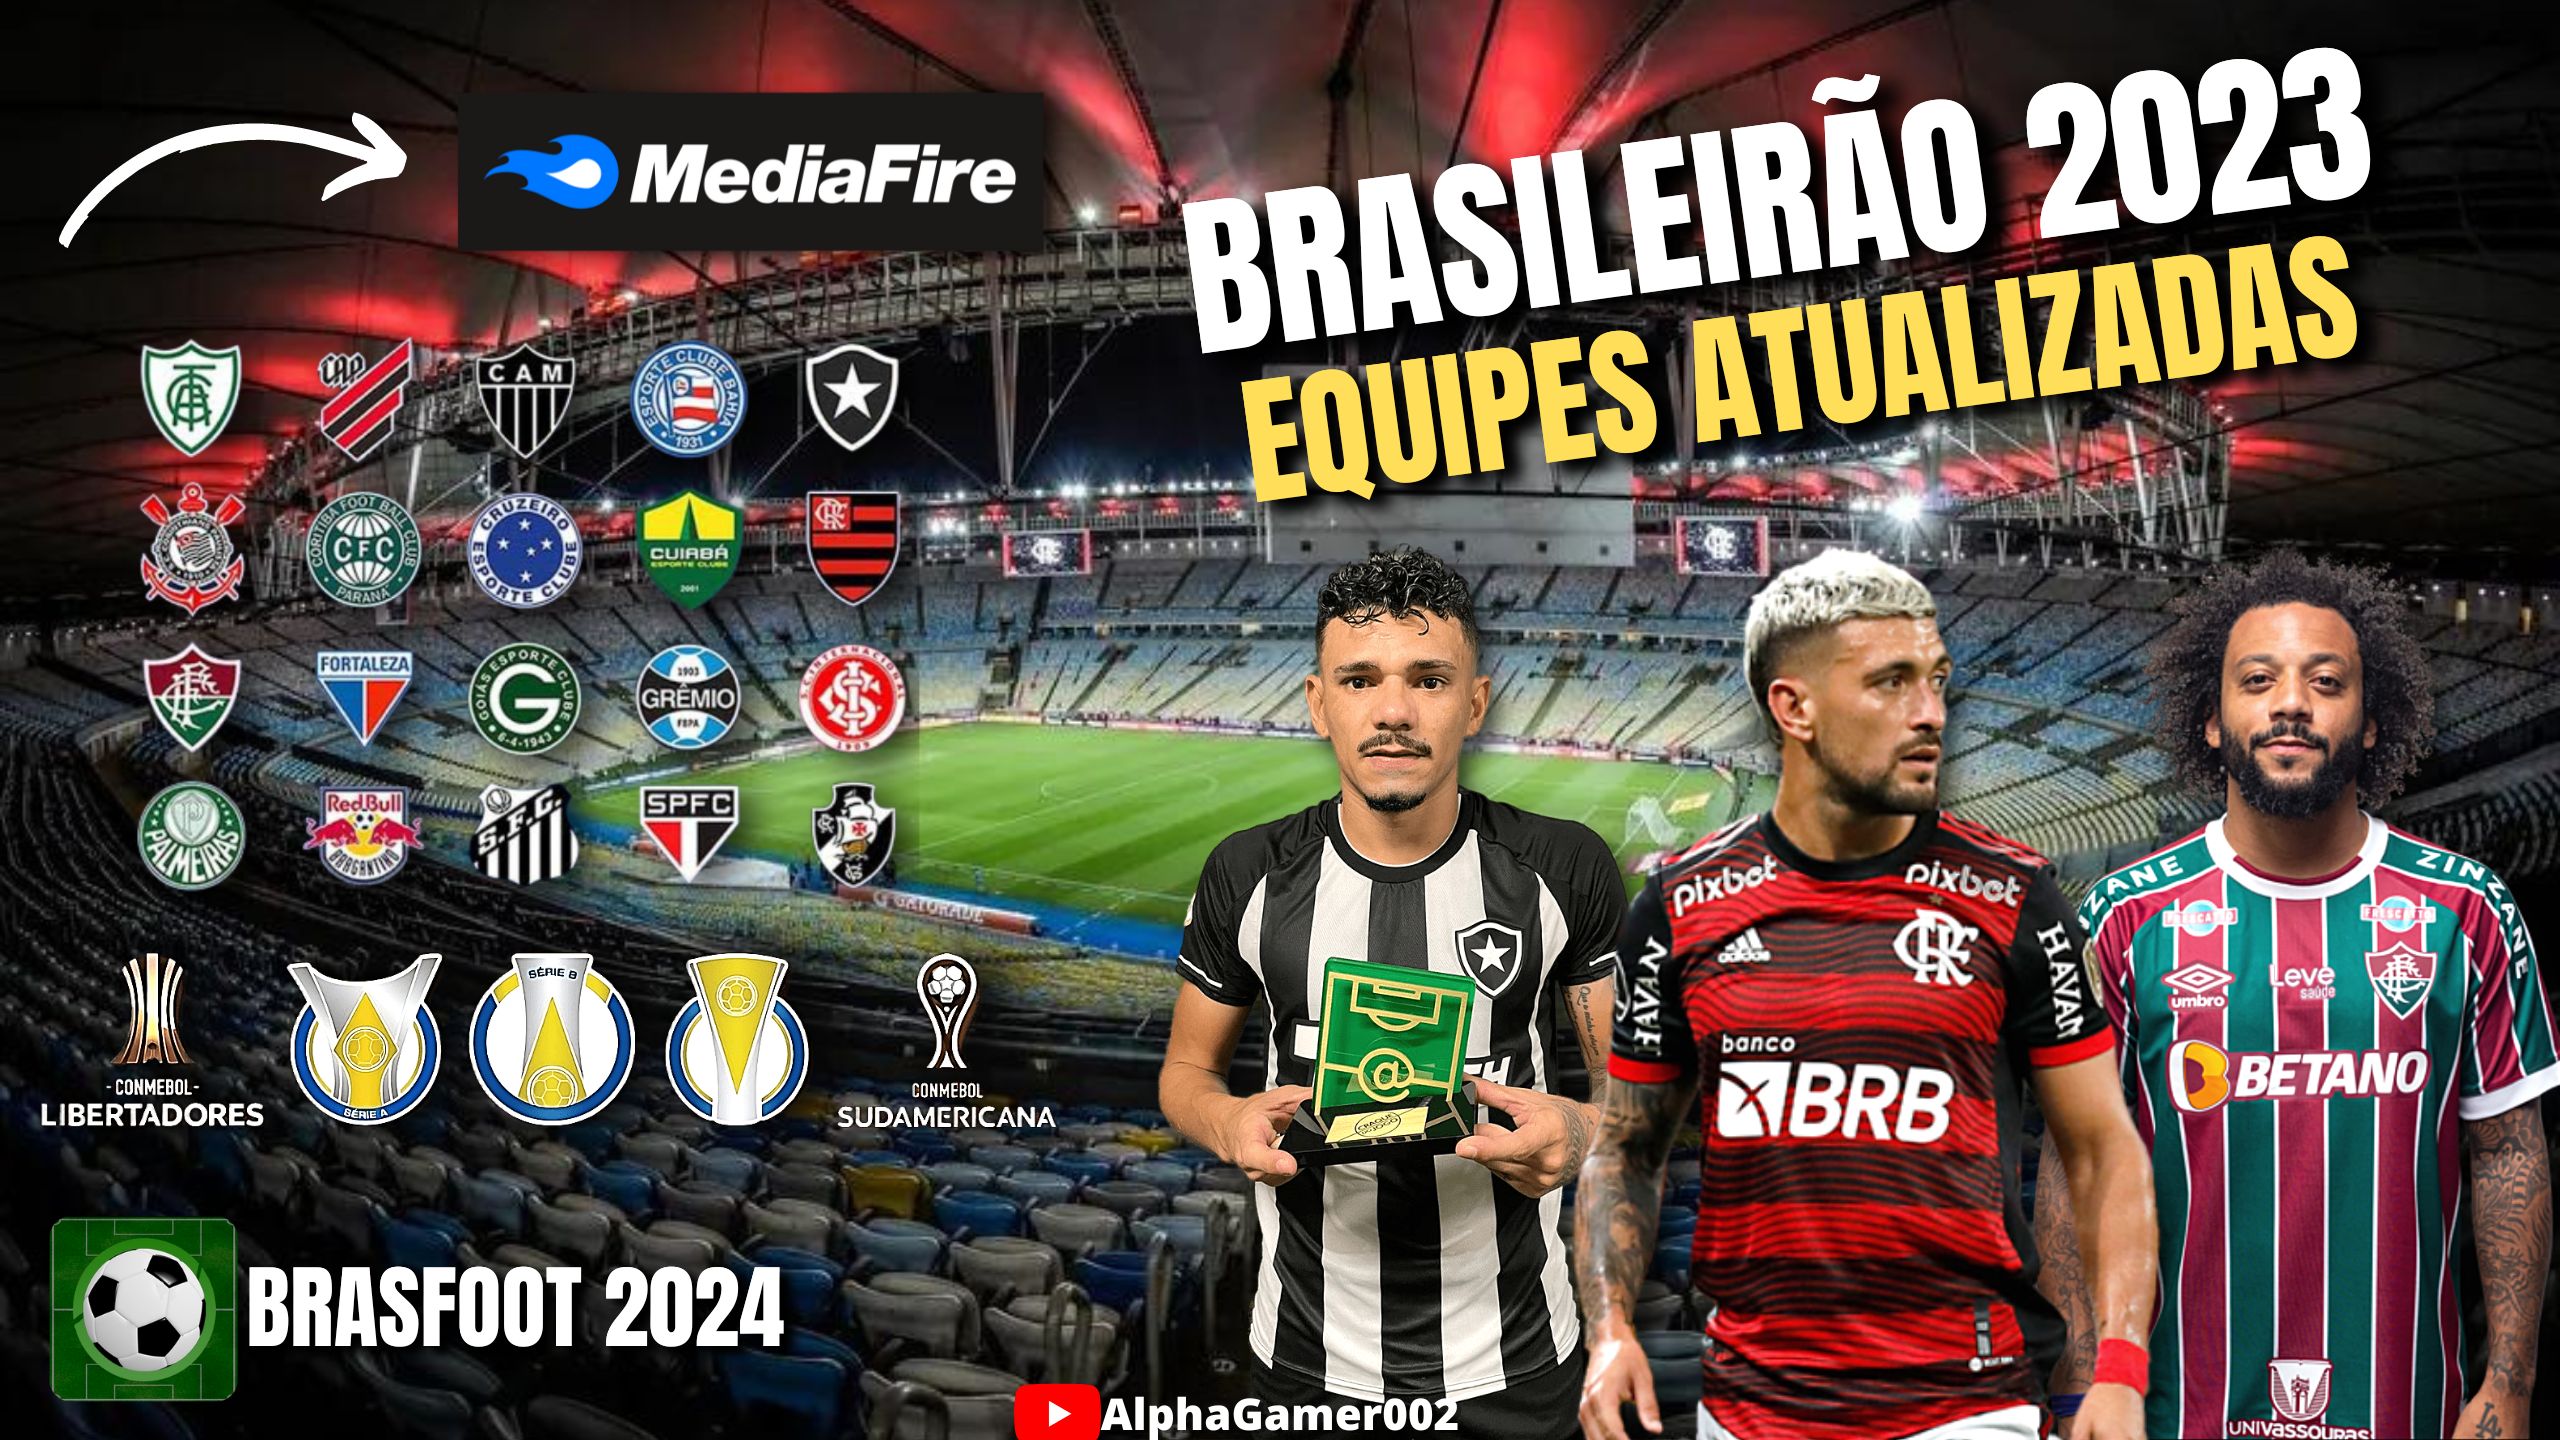 BRASFOOT BRZ 2024 MOBILE SUPER ATUALIZADO BRASILEIRÃO 23 Felipe Alpha Gamer